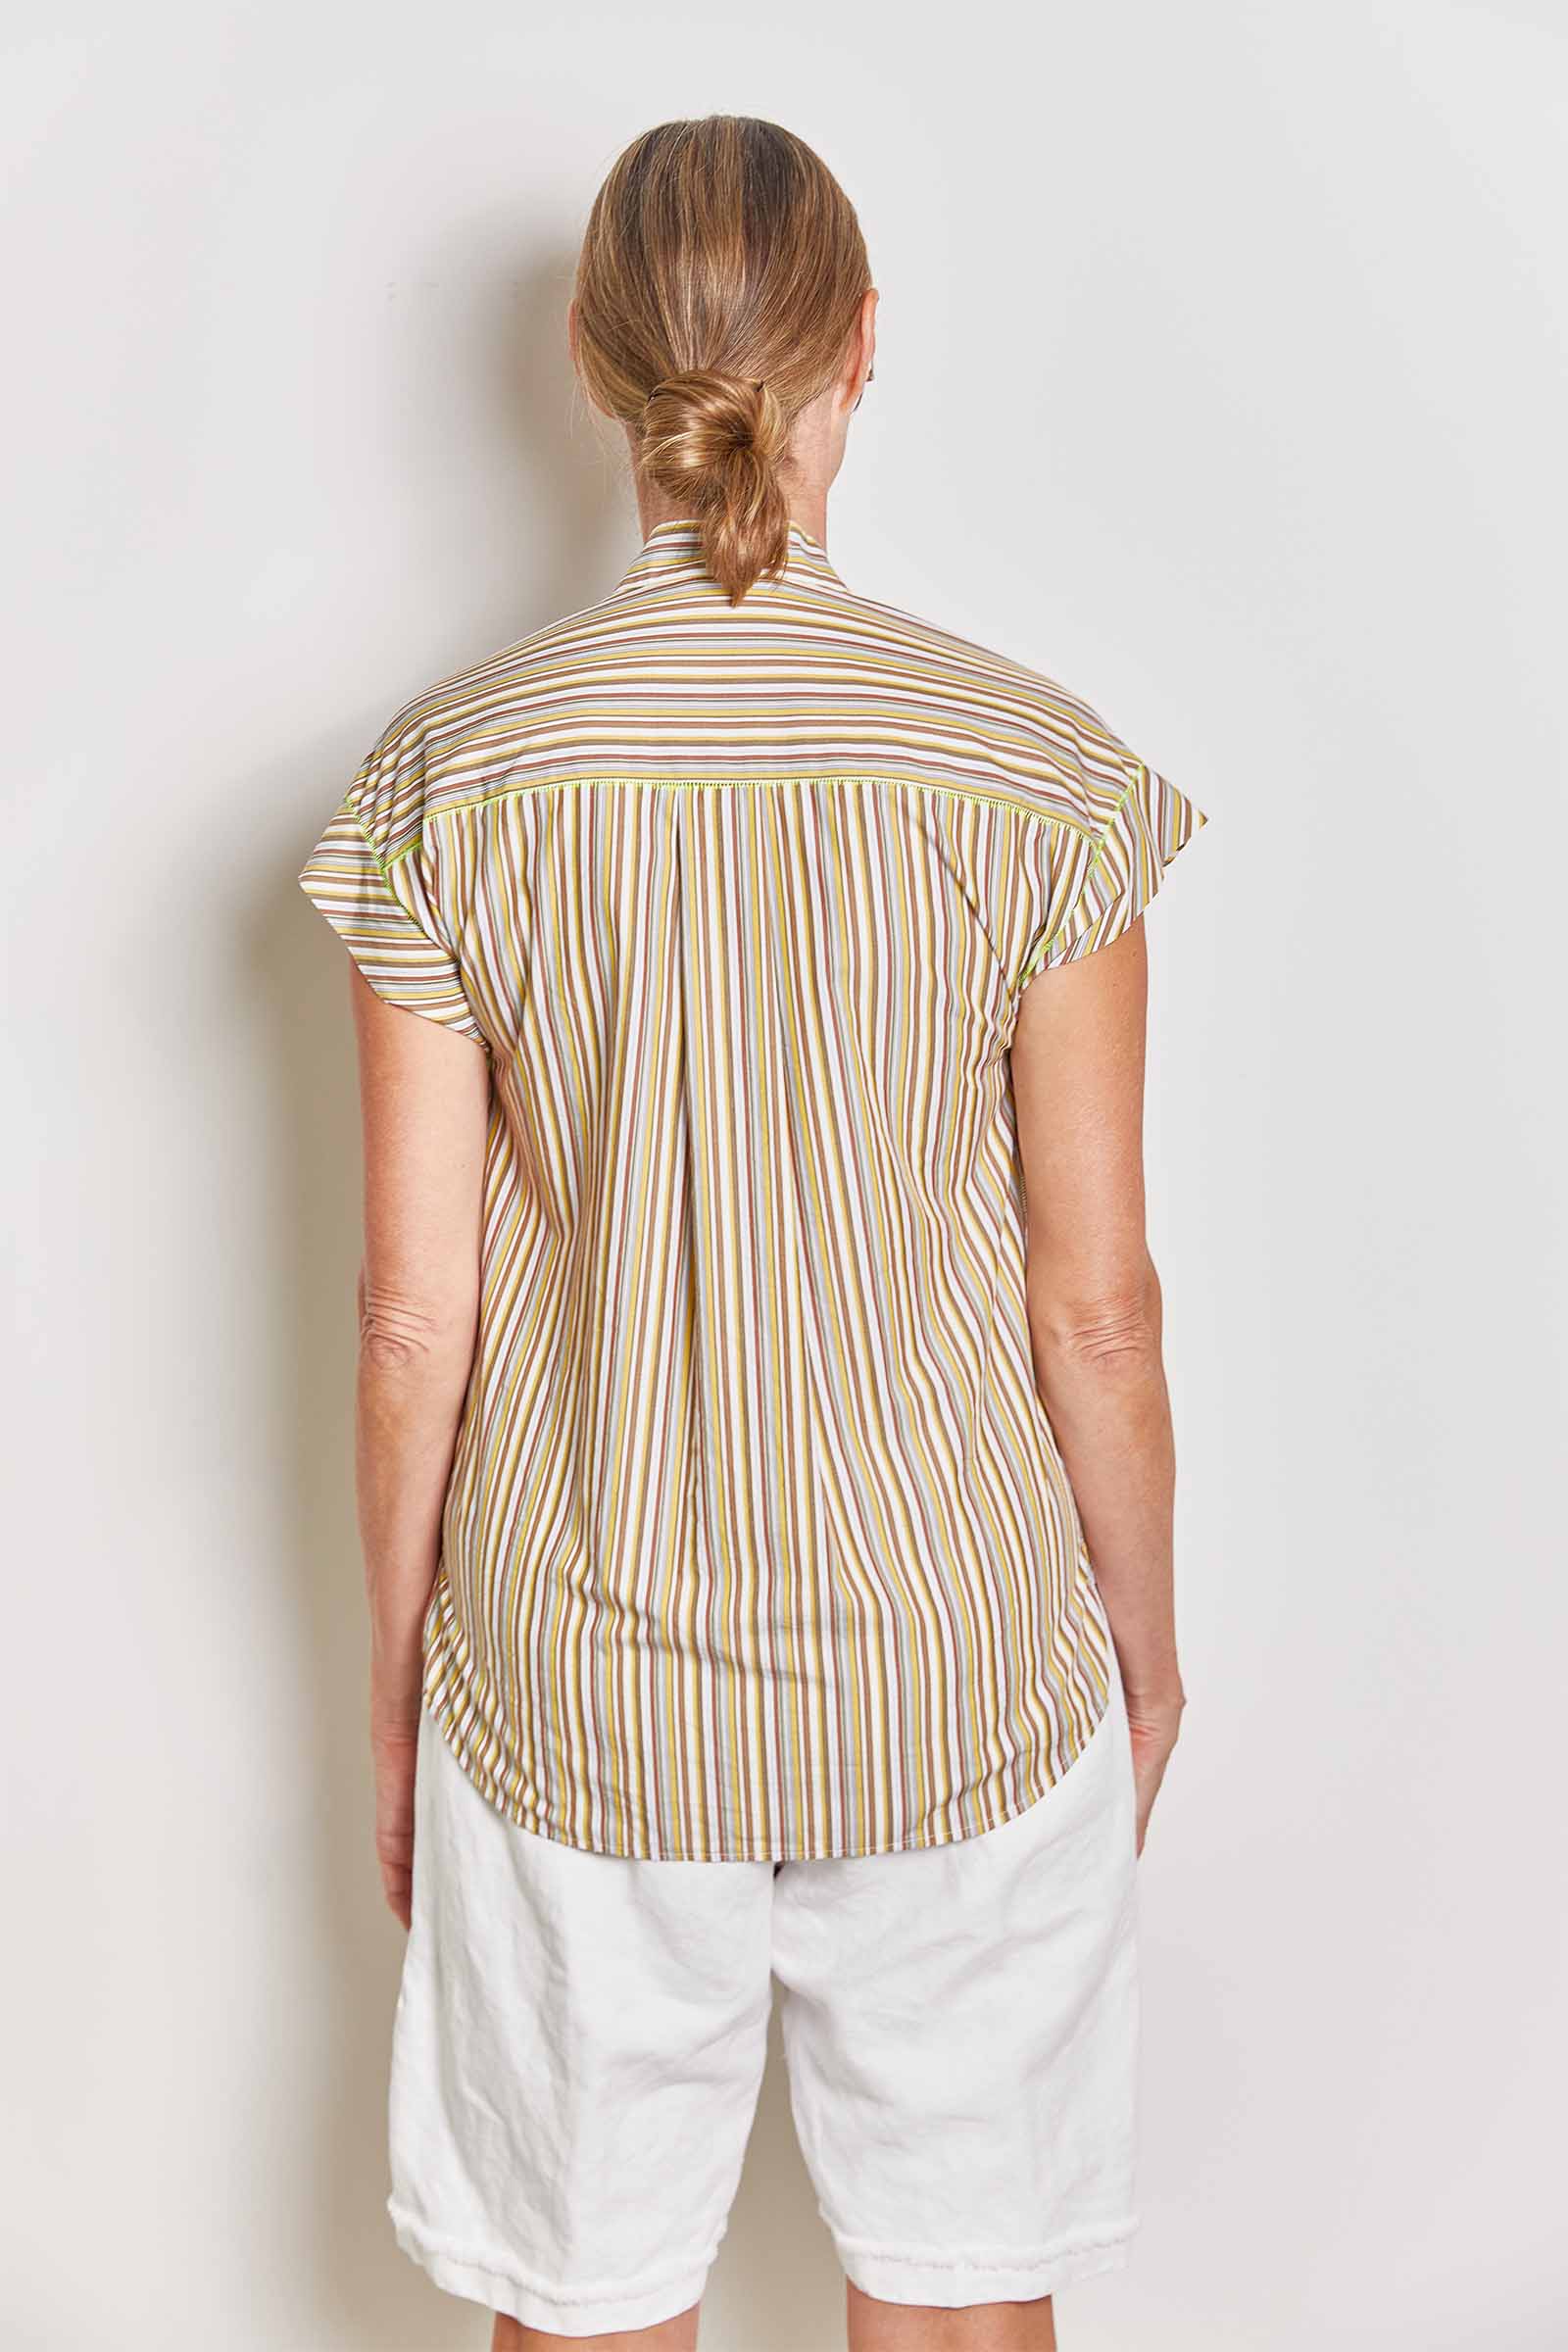 byfreer darlink neutral stripe shirt.